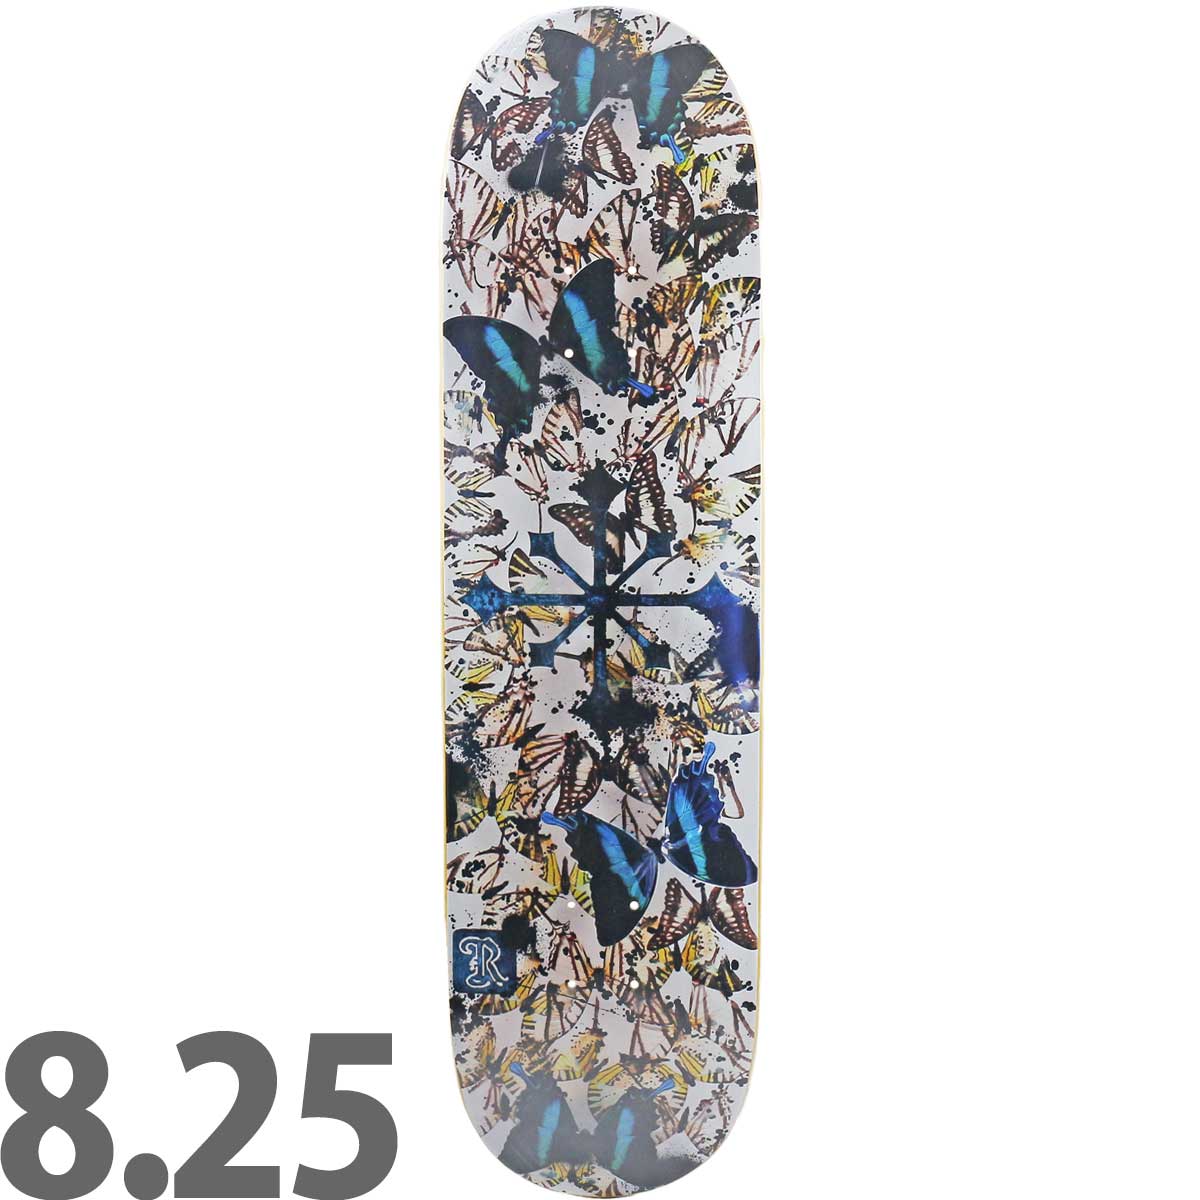 ディスオーダー 8.25インチ スケボー デッキ Disorder Skateboards 